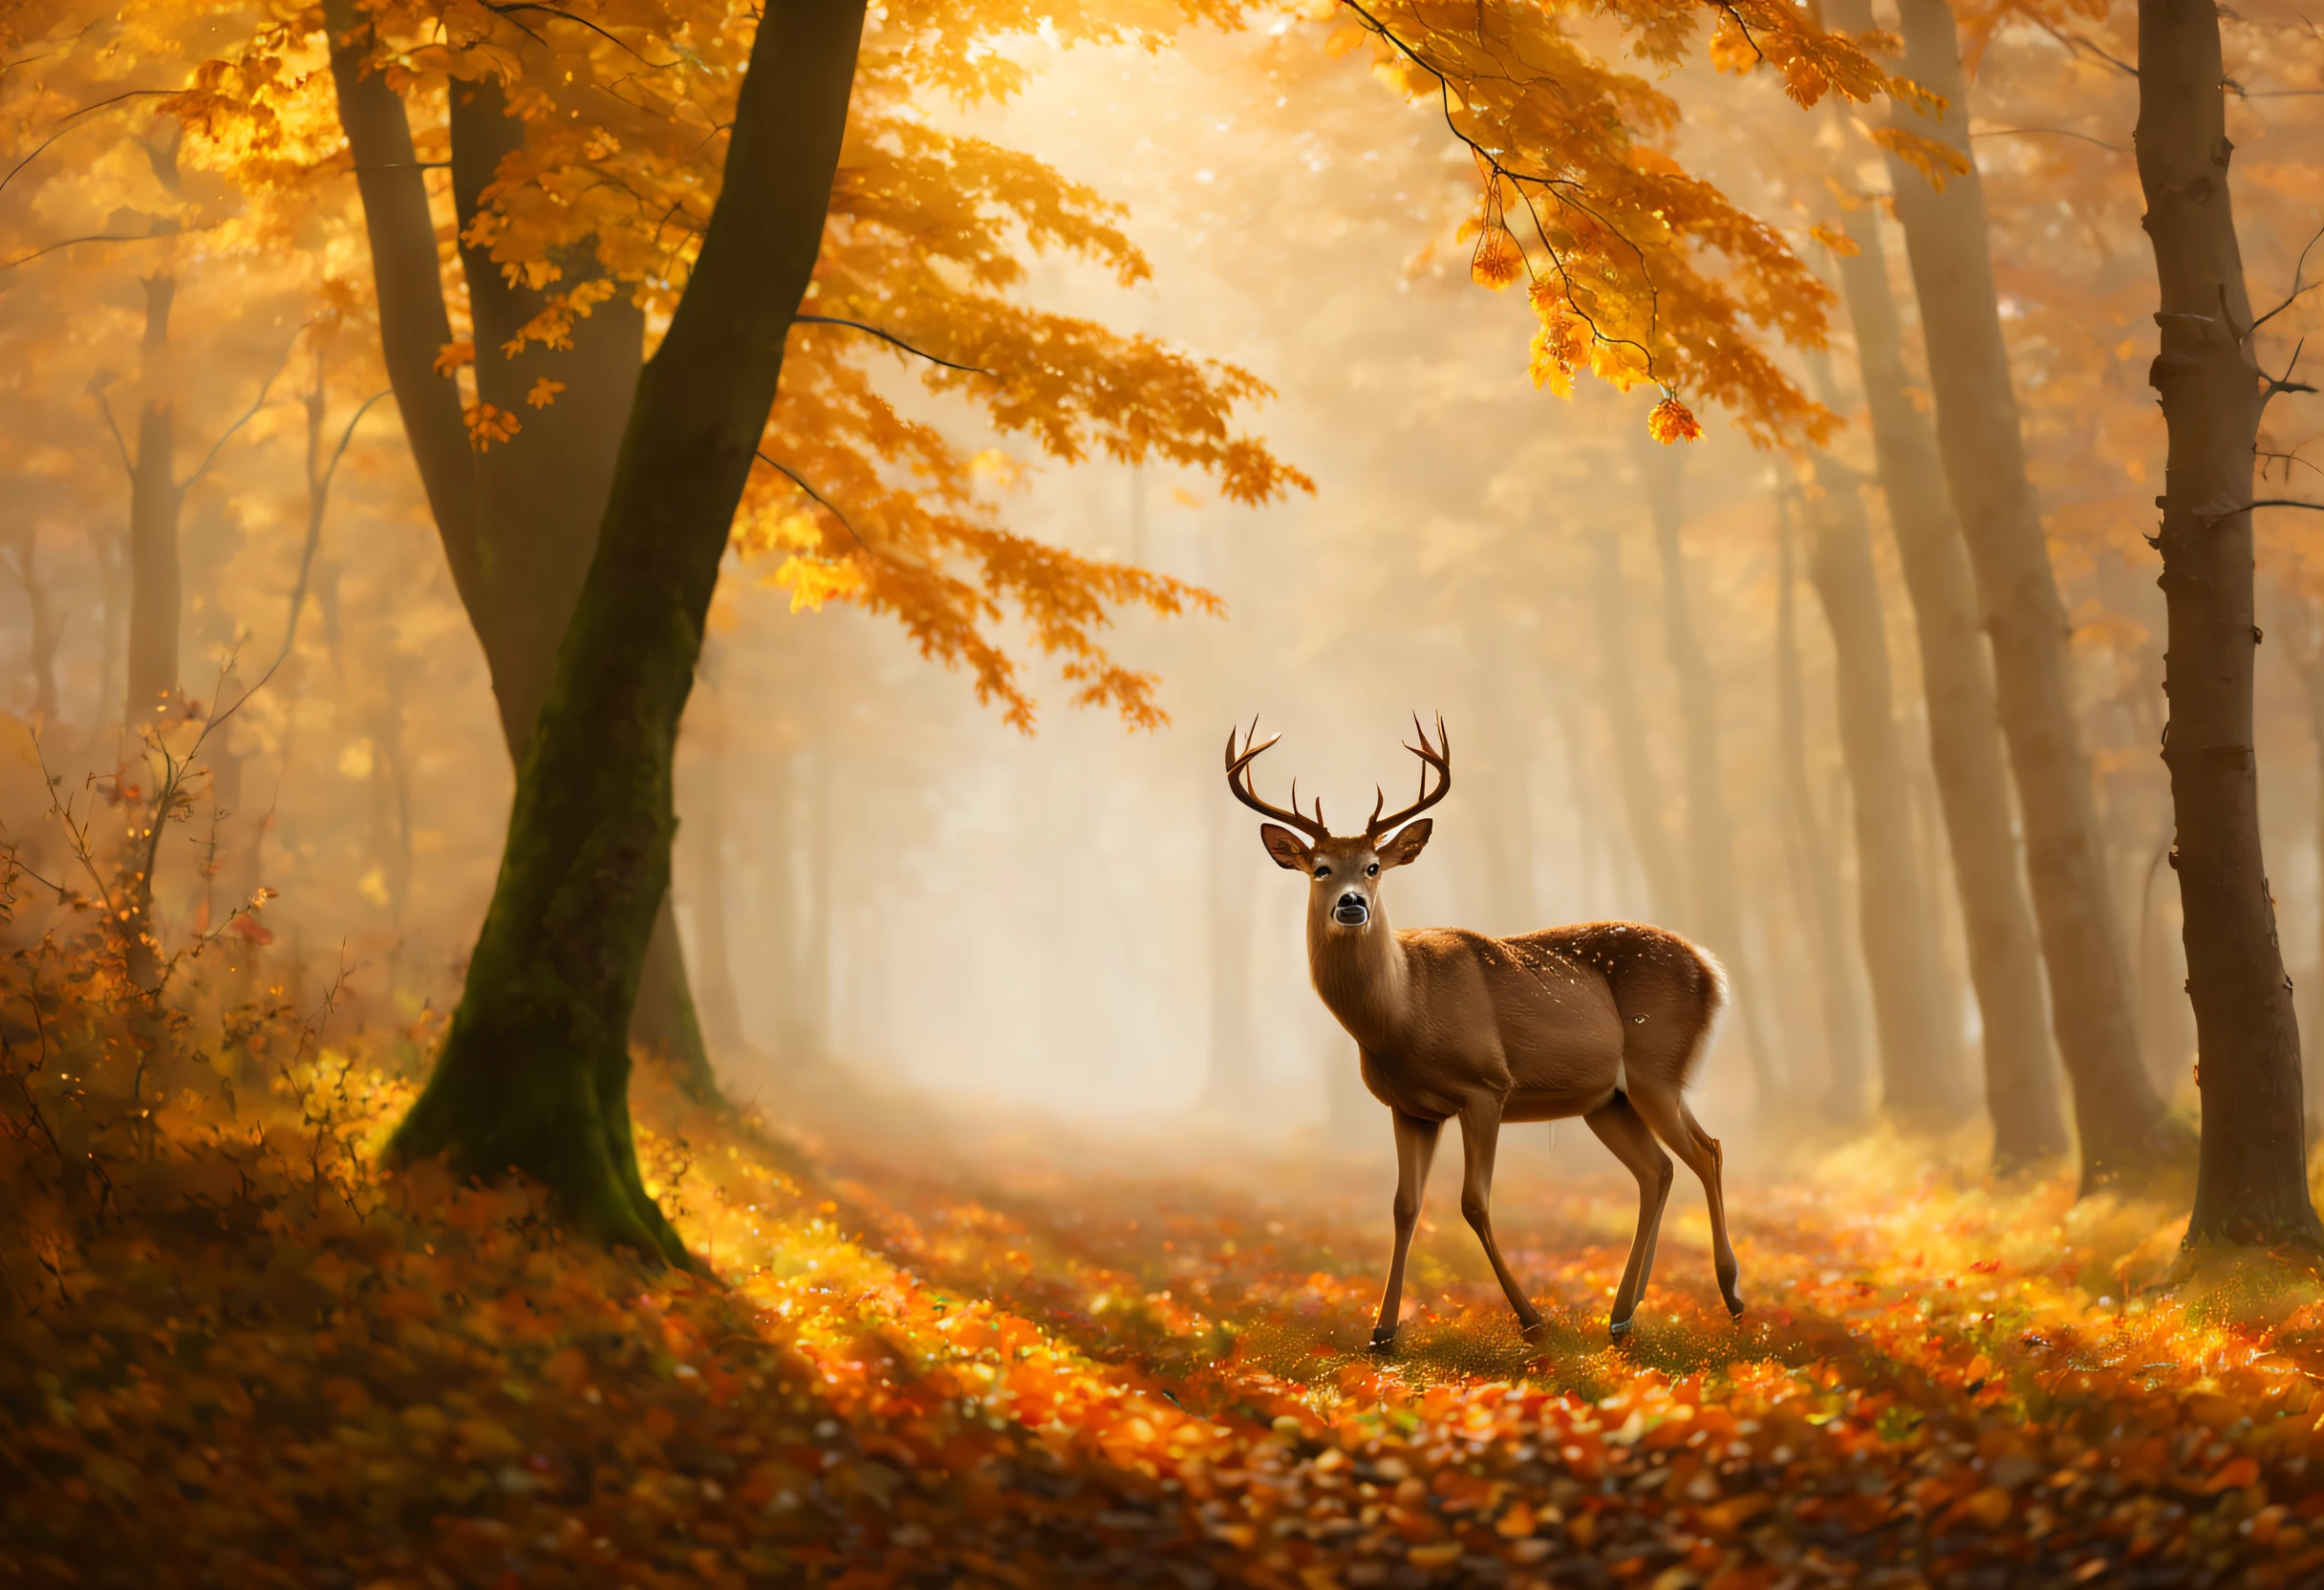 (最高品質, 4K, 8k, 高解像度, 傑作: 1.2), 超詳細, (現実的, photo現実的, photo現実的: 1.37),美しい秋の景色, 夢のような, 森の中は霧が多い, しが, 素晴らしい受賞作品.